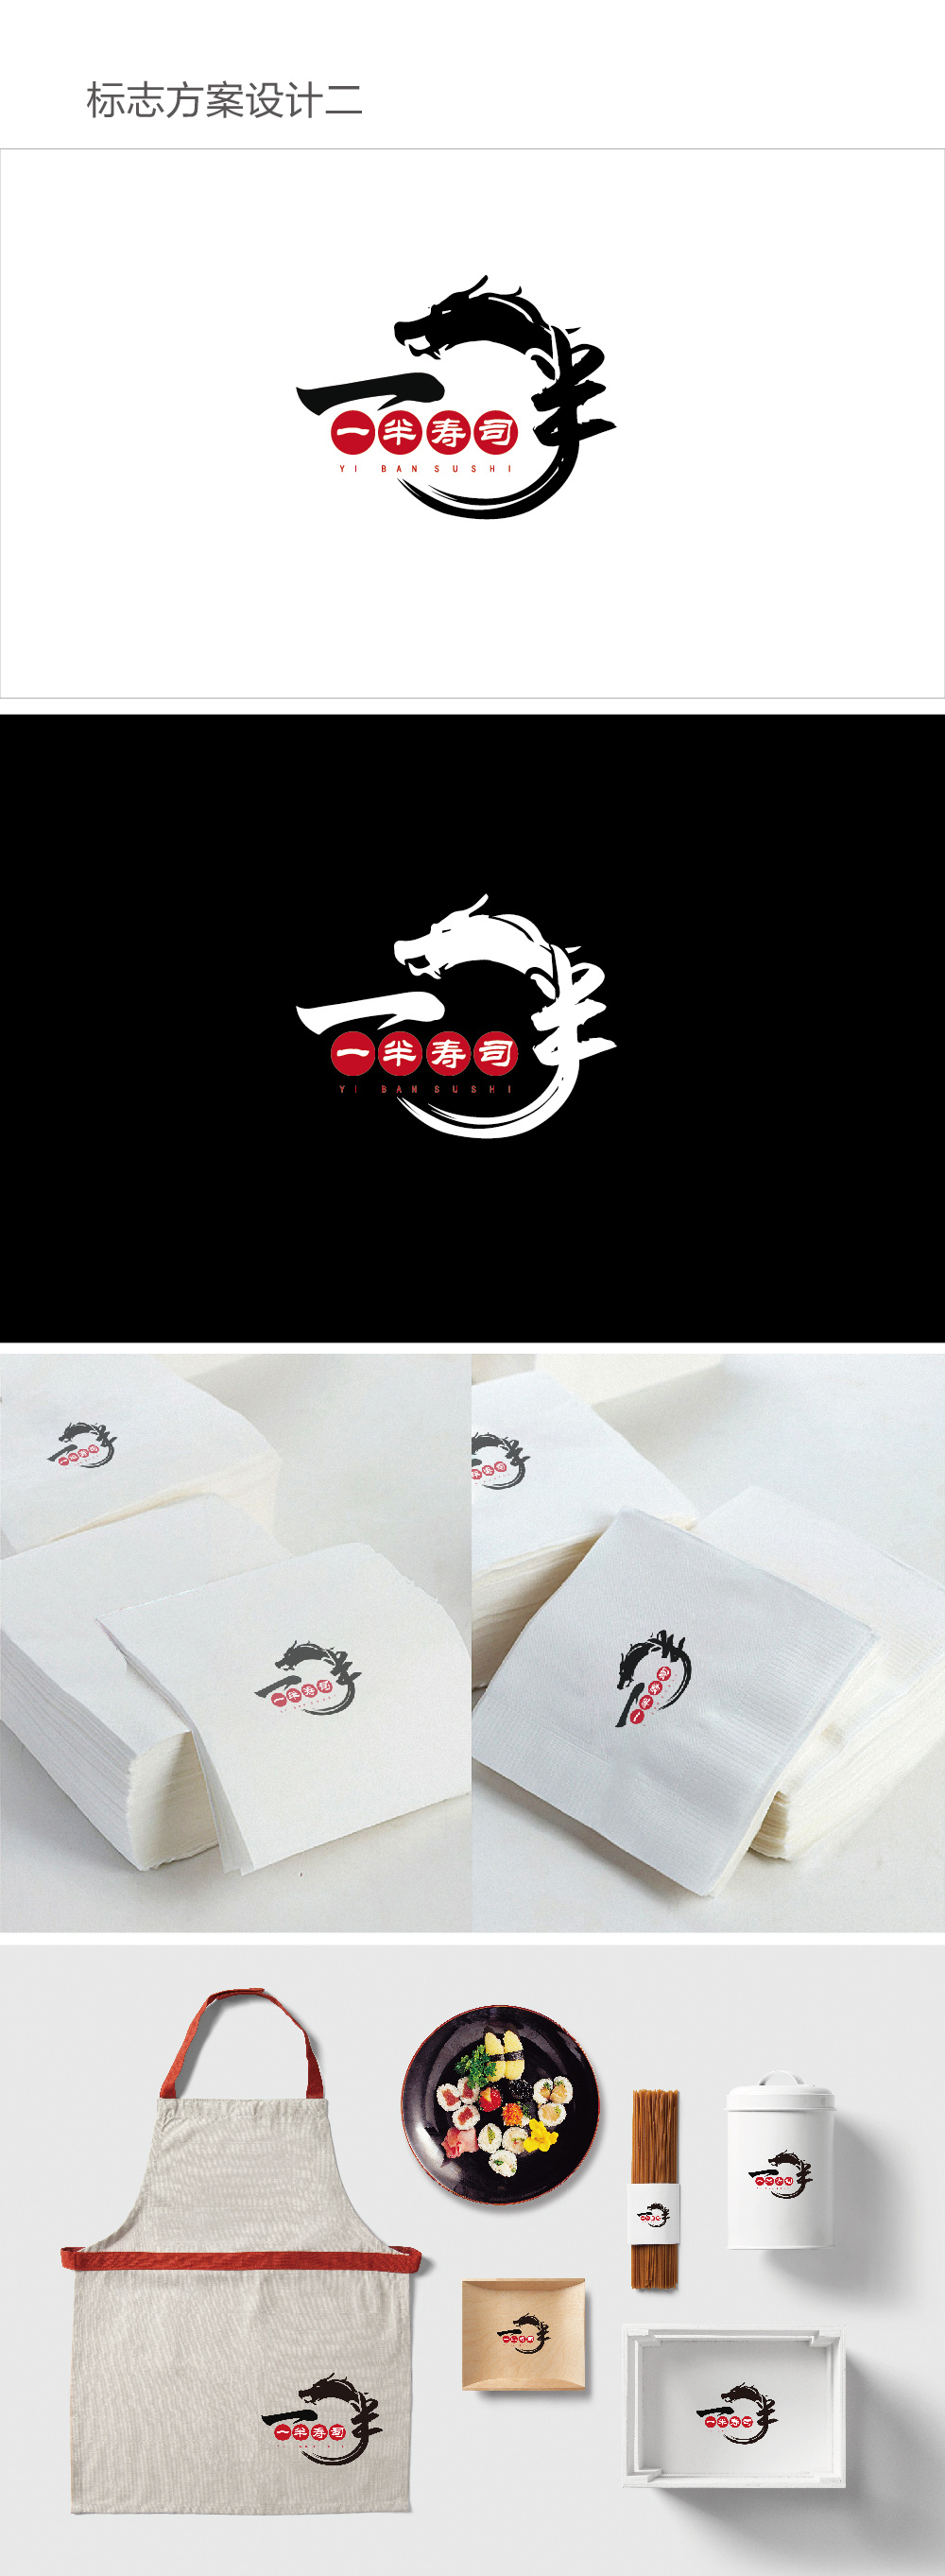 寿司店logo方案设计